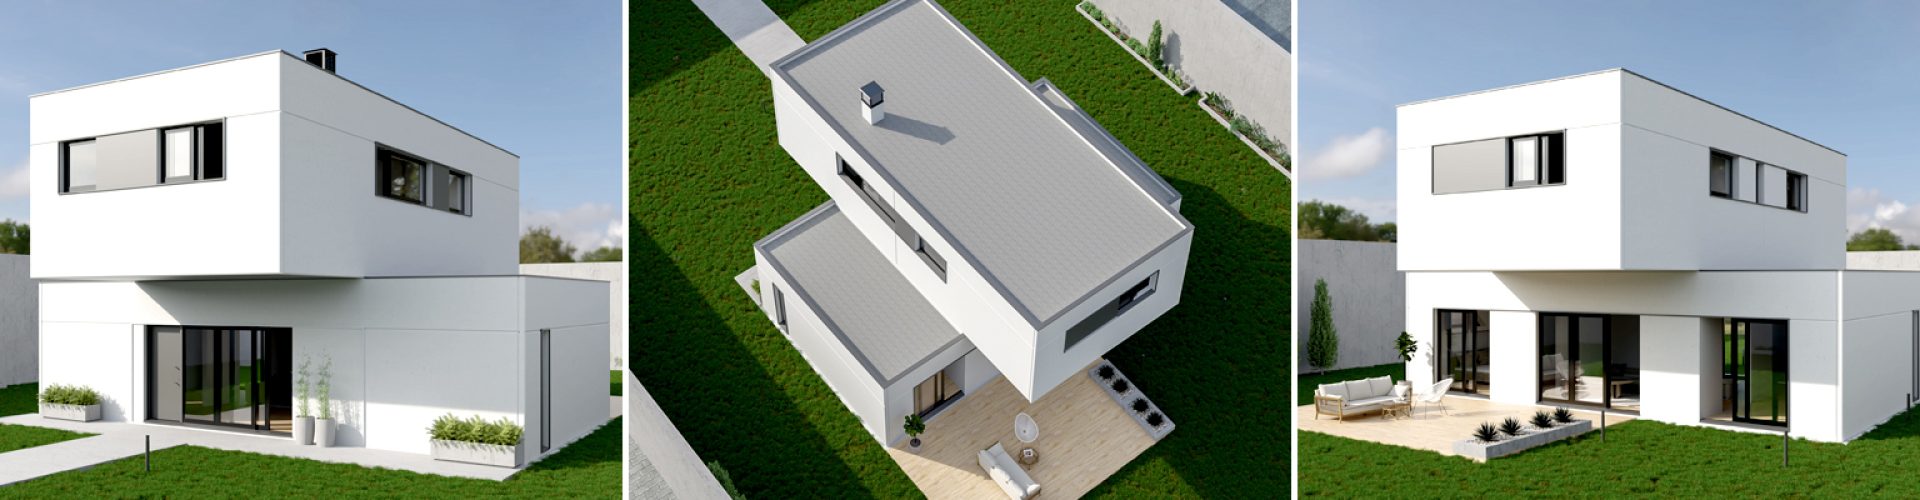 Modelo-Vilalta-X-Casas-Industrializadas_Modular-Home